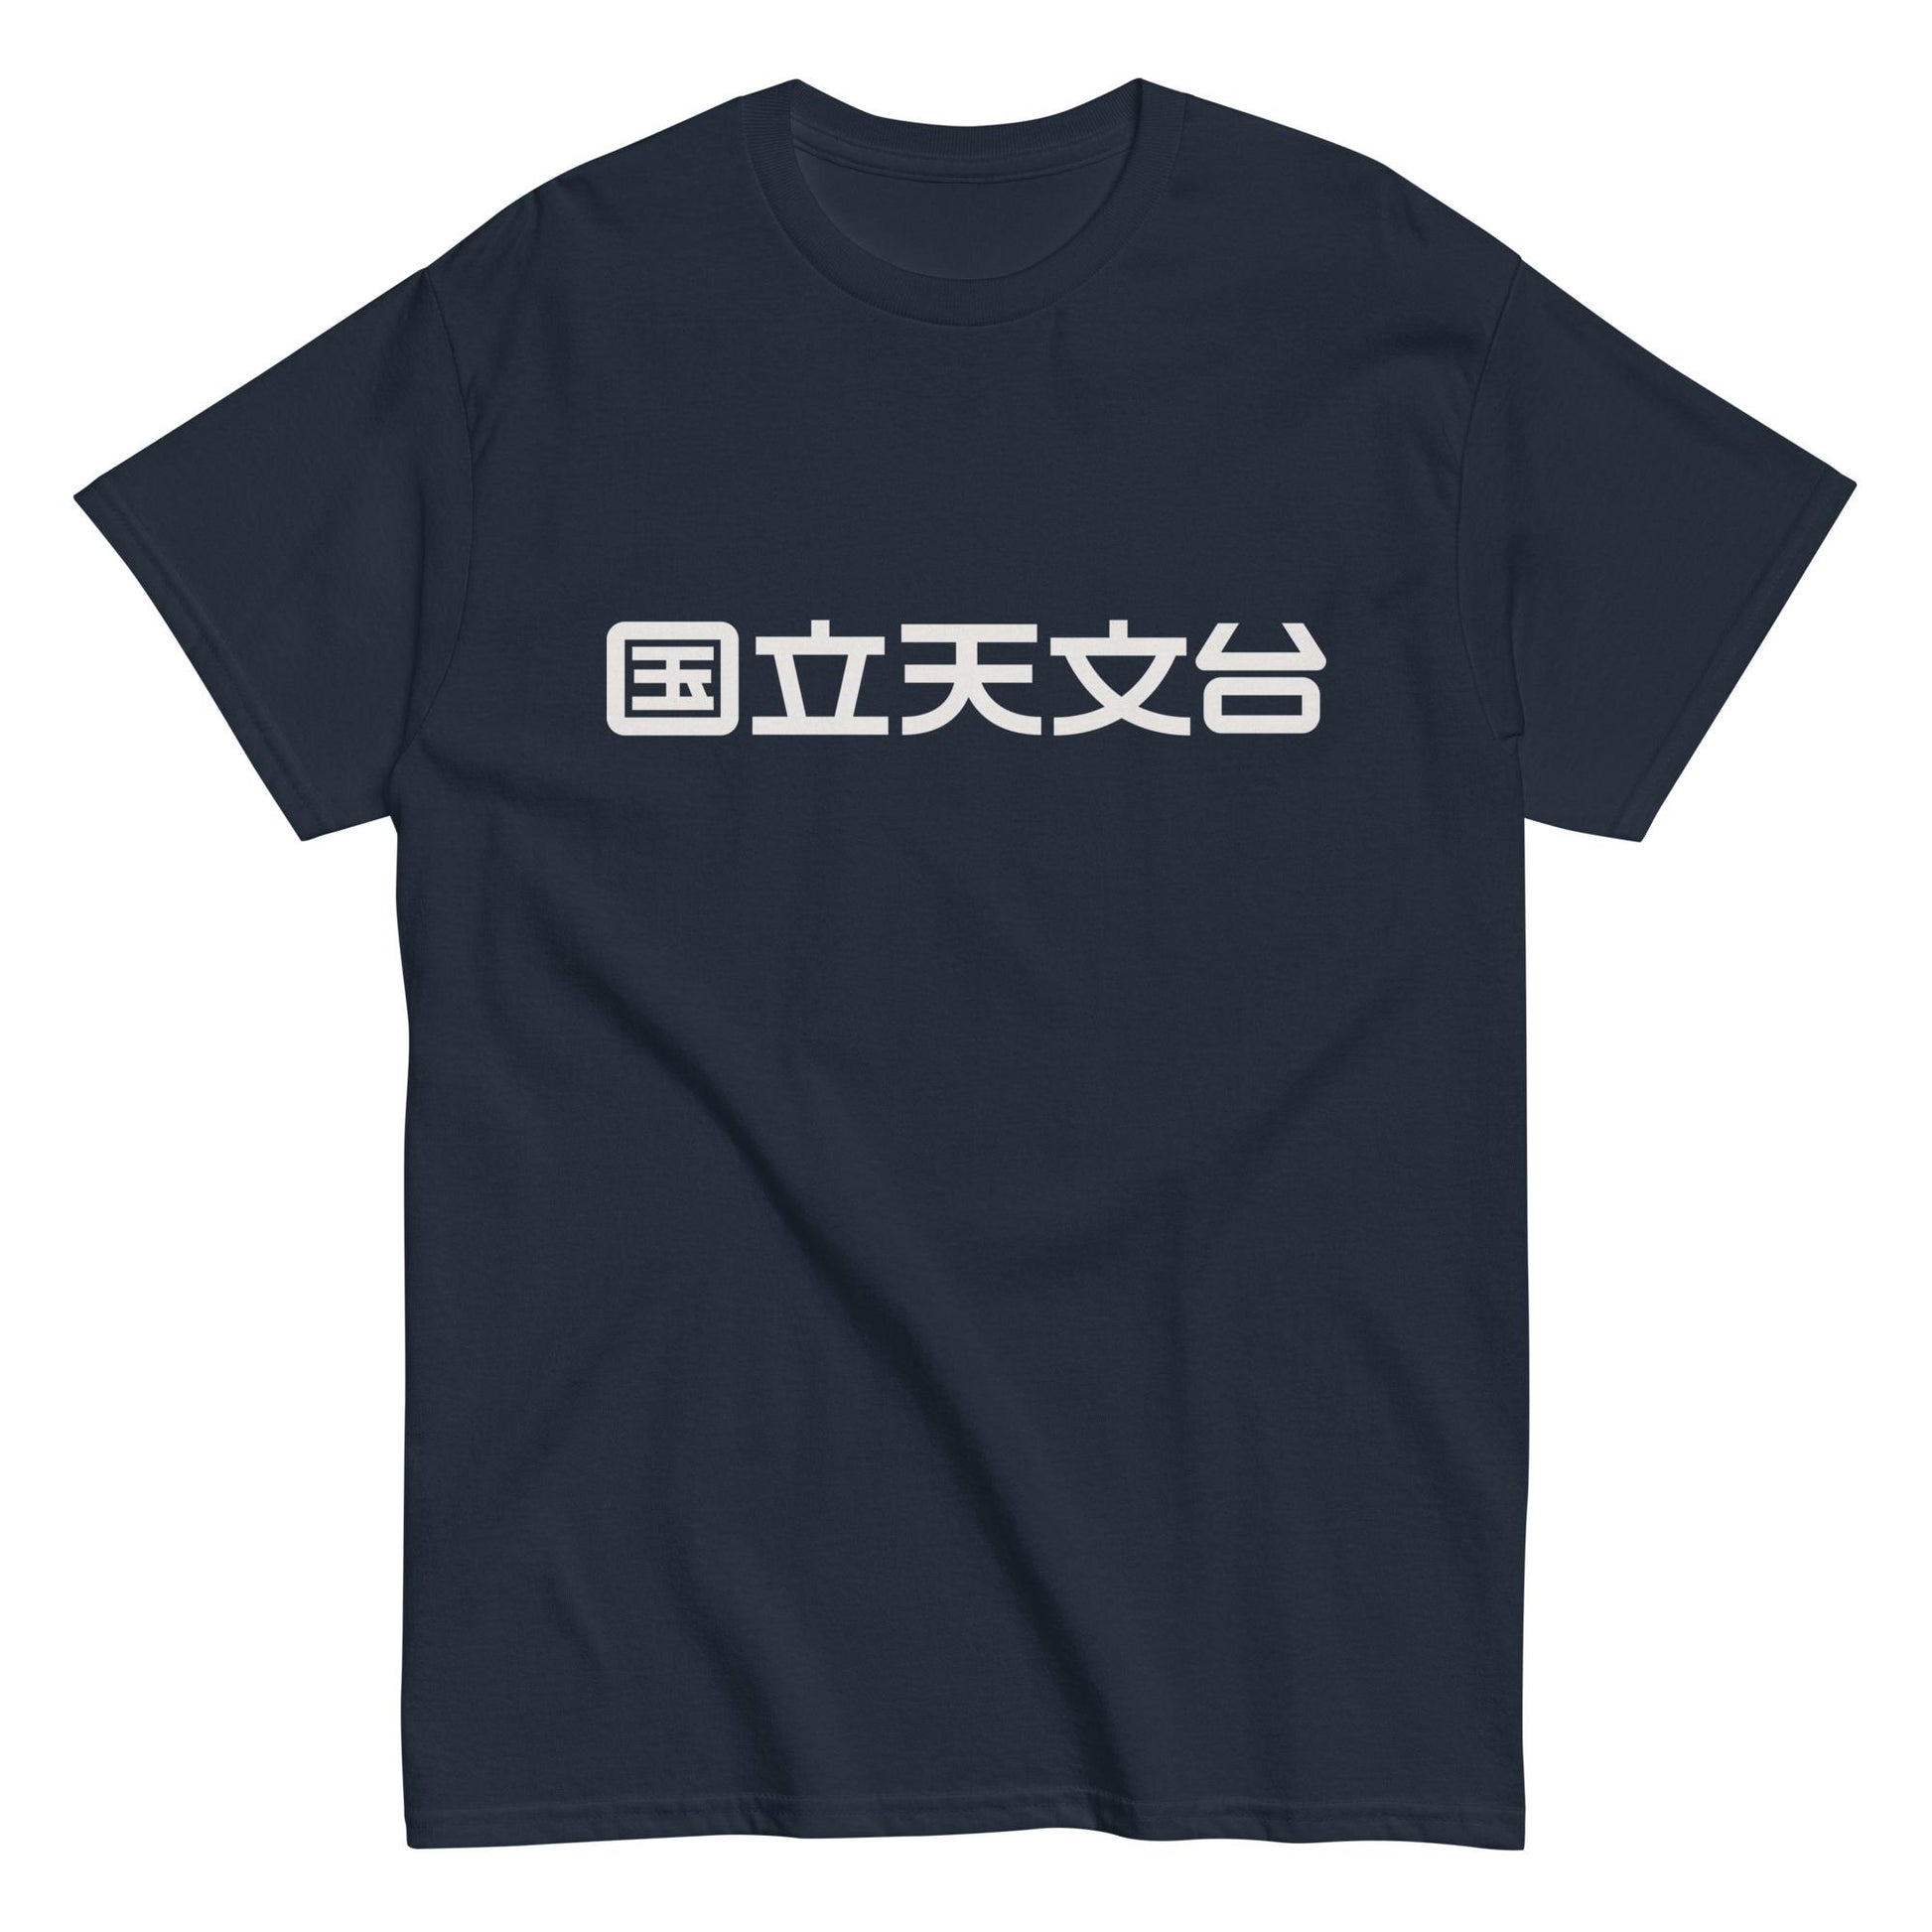 国立天文台 NAOJ漢字 ロゴマーク ヘビーウェイト Tシャツ ネイビー S 00